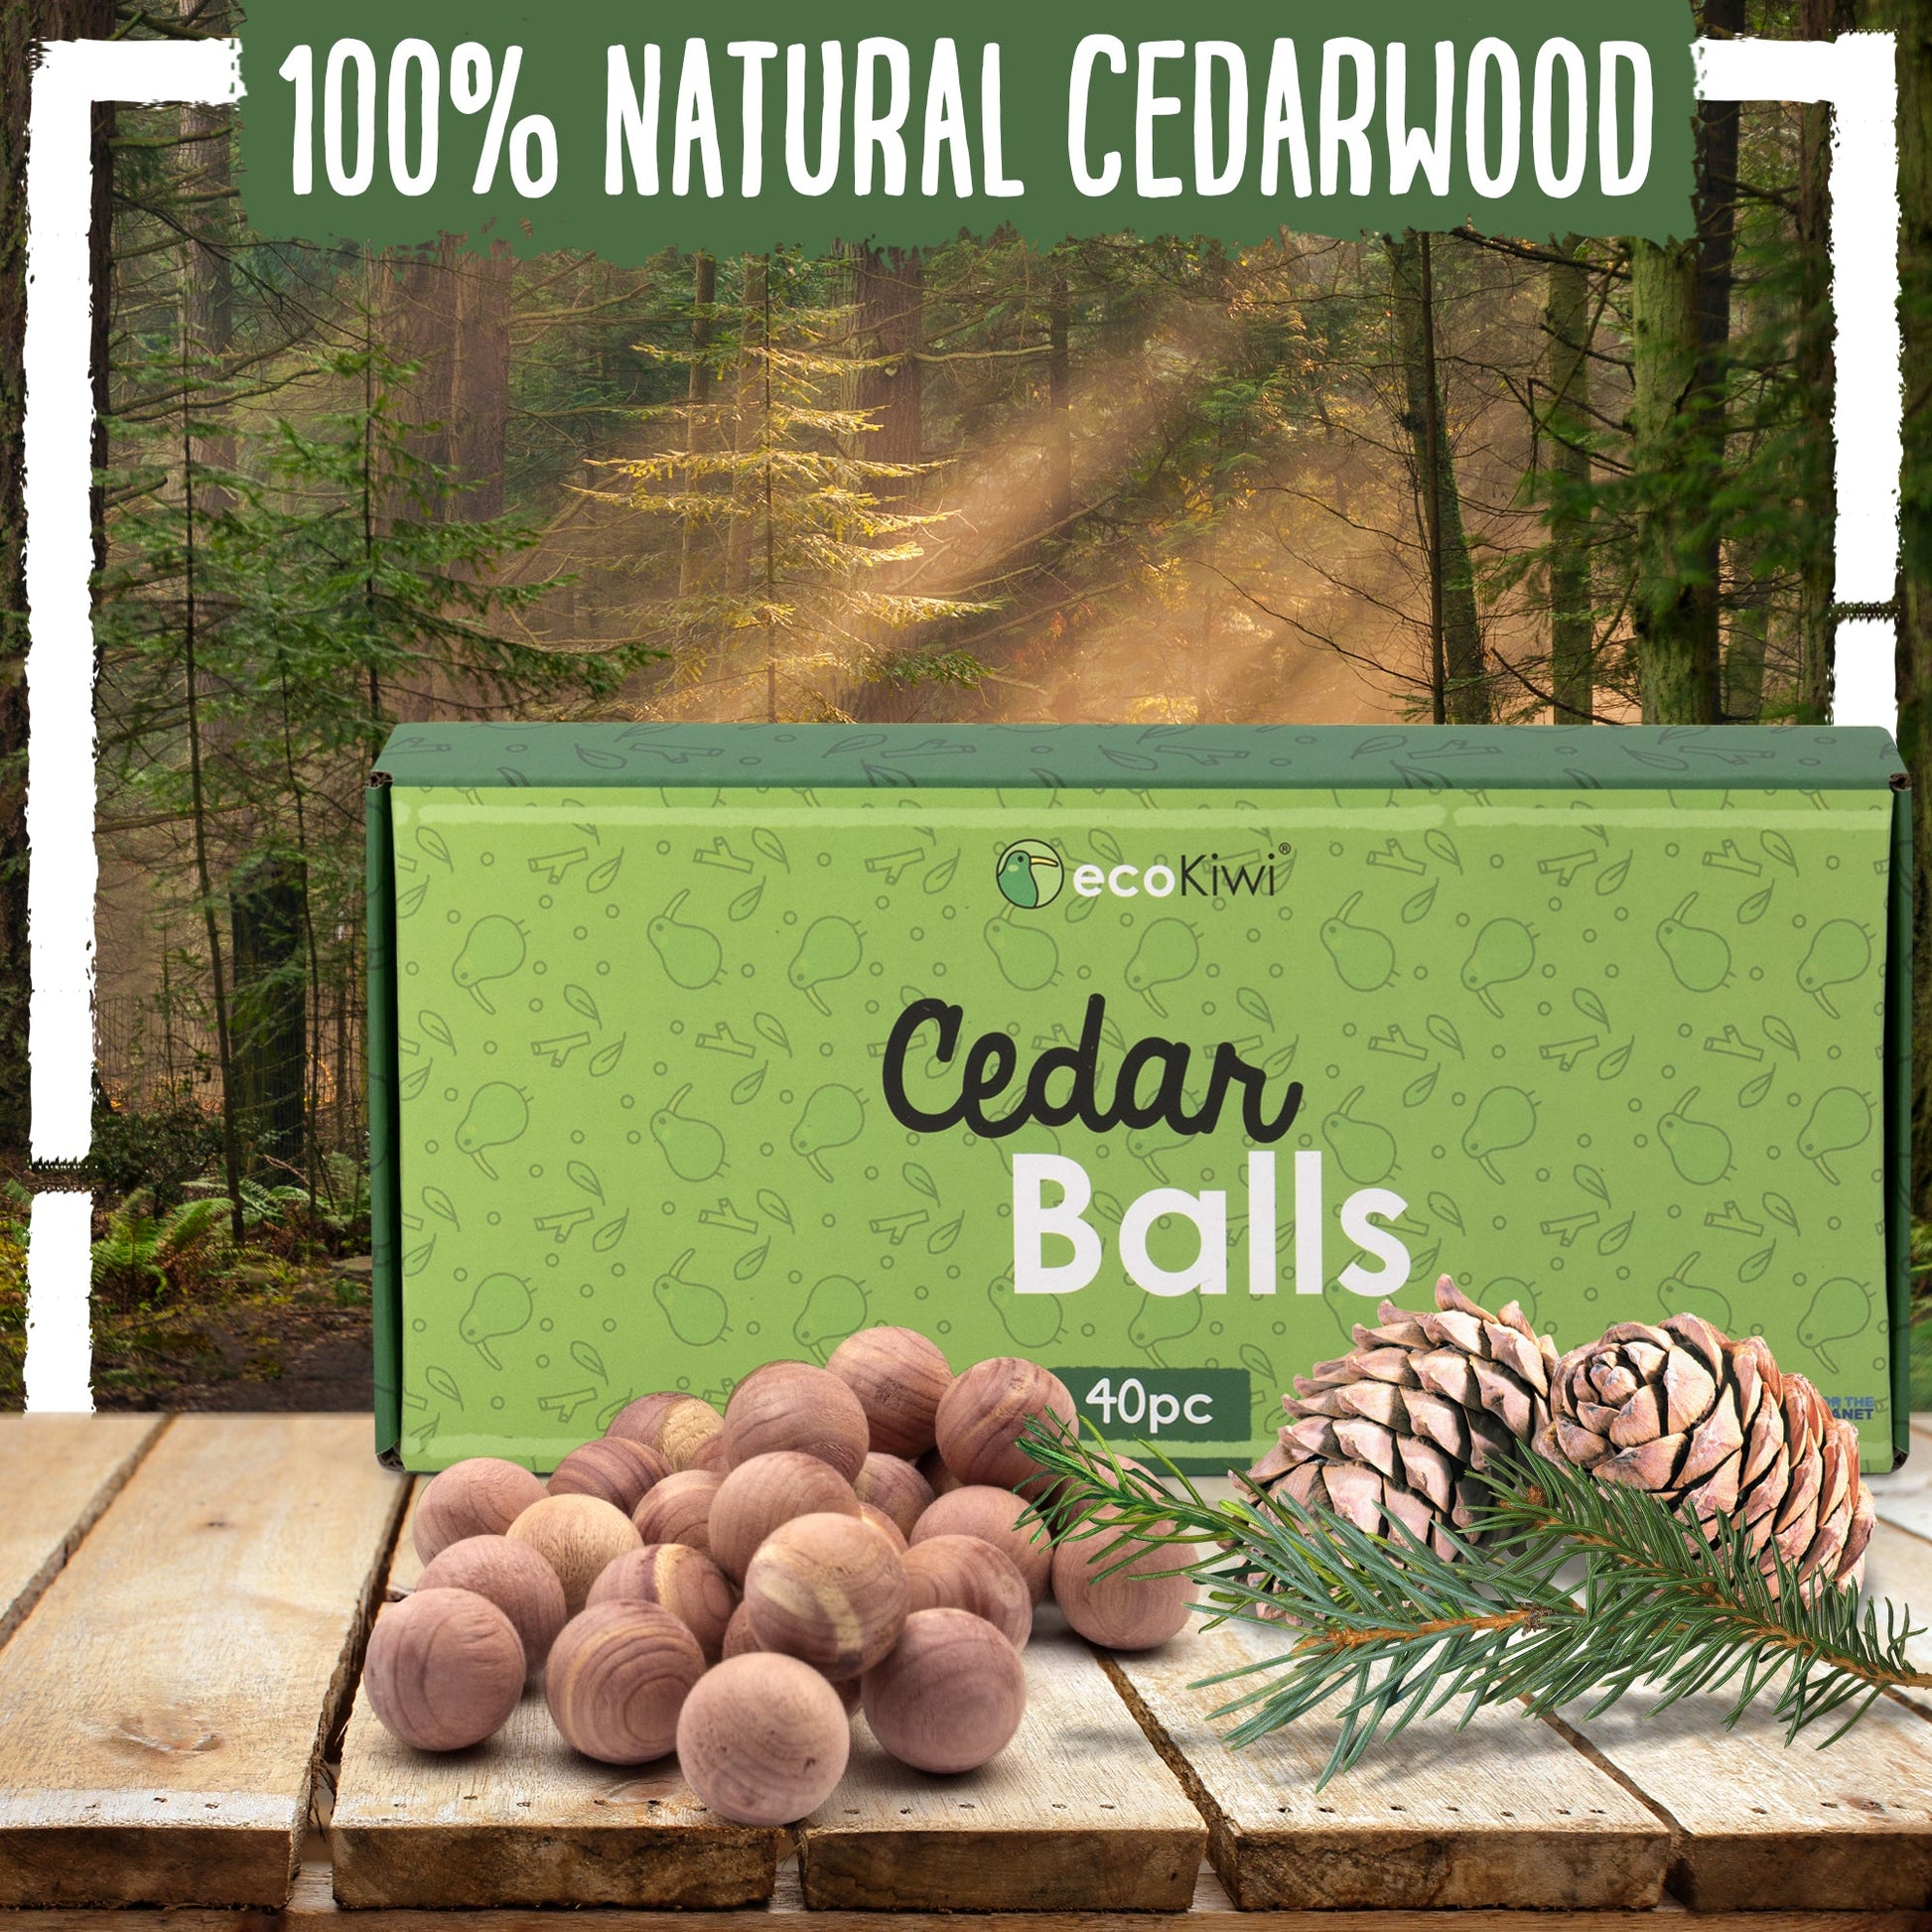 6 Moth Repellent Cedar Balls